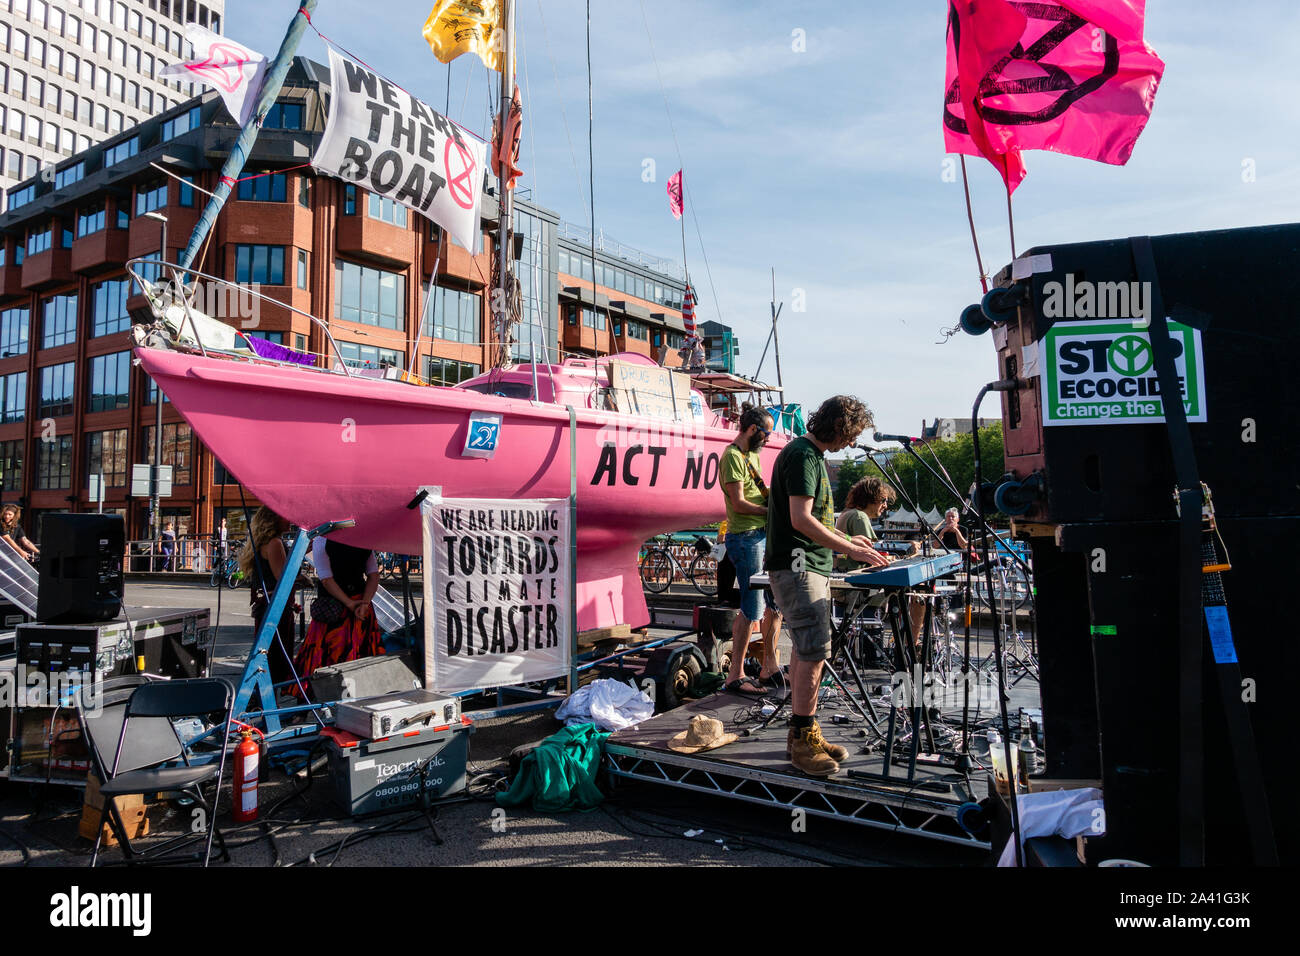 Extinction de l'été manifestations rébellion soulèvement à Bristol le 18 juillet 2019 - les protestataires qui occupent le pont de Bristol, Bristol, Royaume-Uni, avec voile et band Banque D'Images